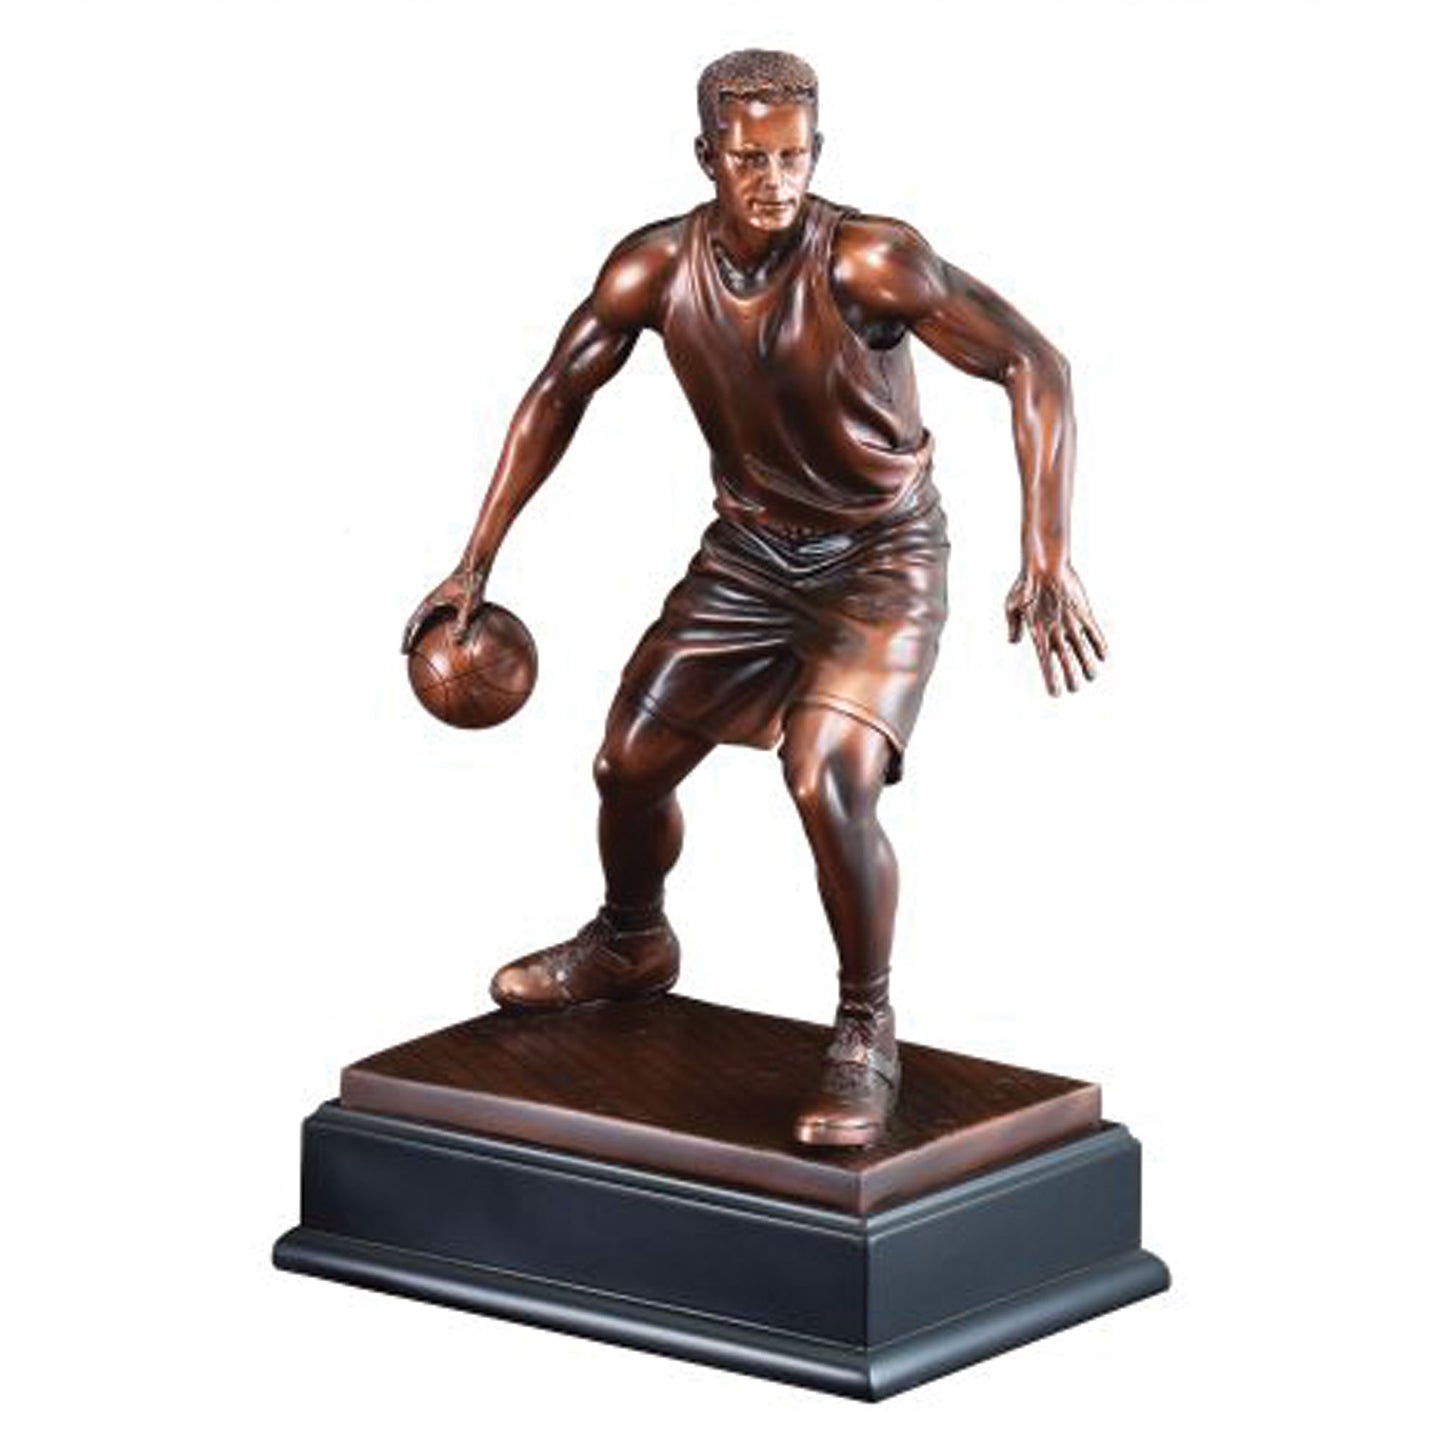 Basketball Galley Resin Sculpture